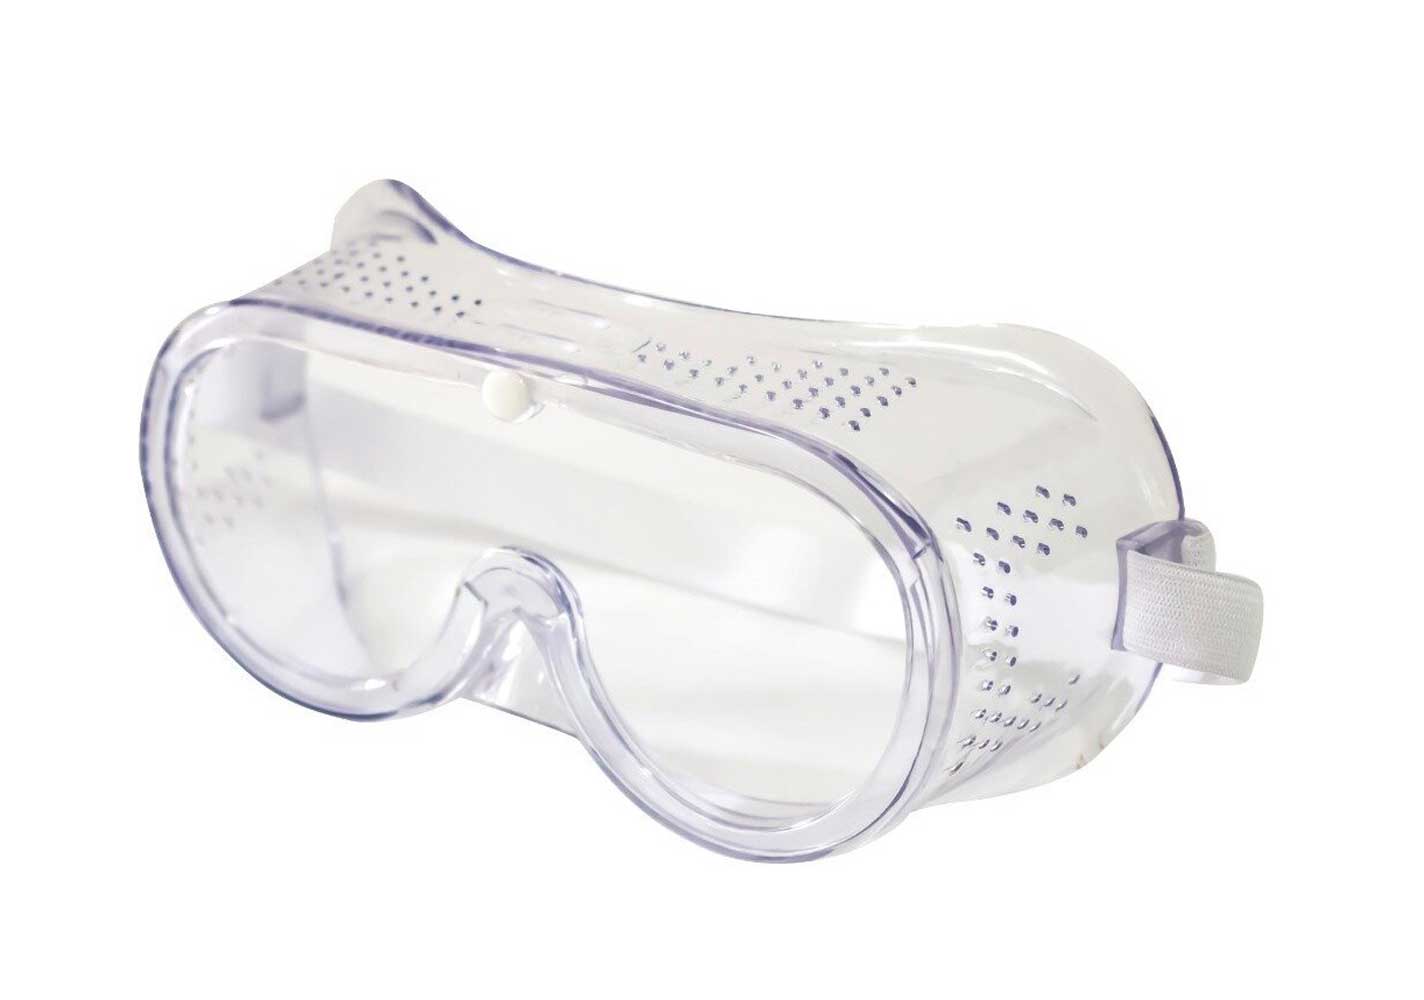 Lentes Seguridad Goggles Ajustable Transparente 2 pzas Adir ADIR Ferreabasto